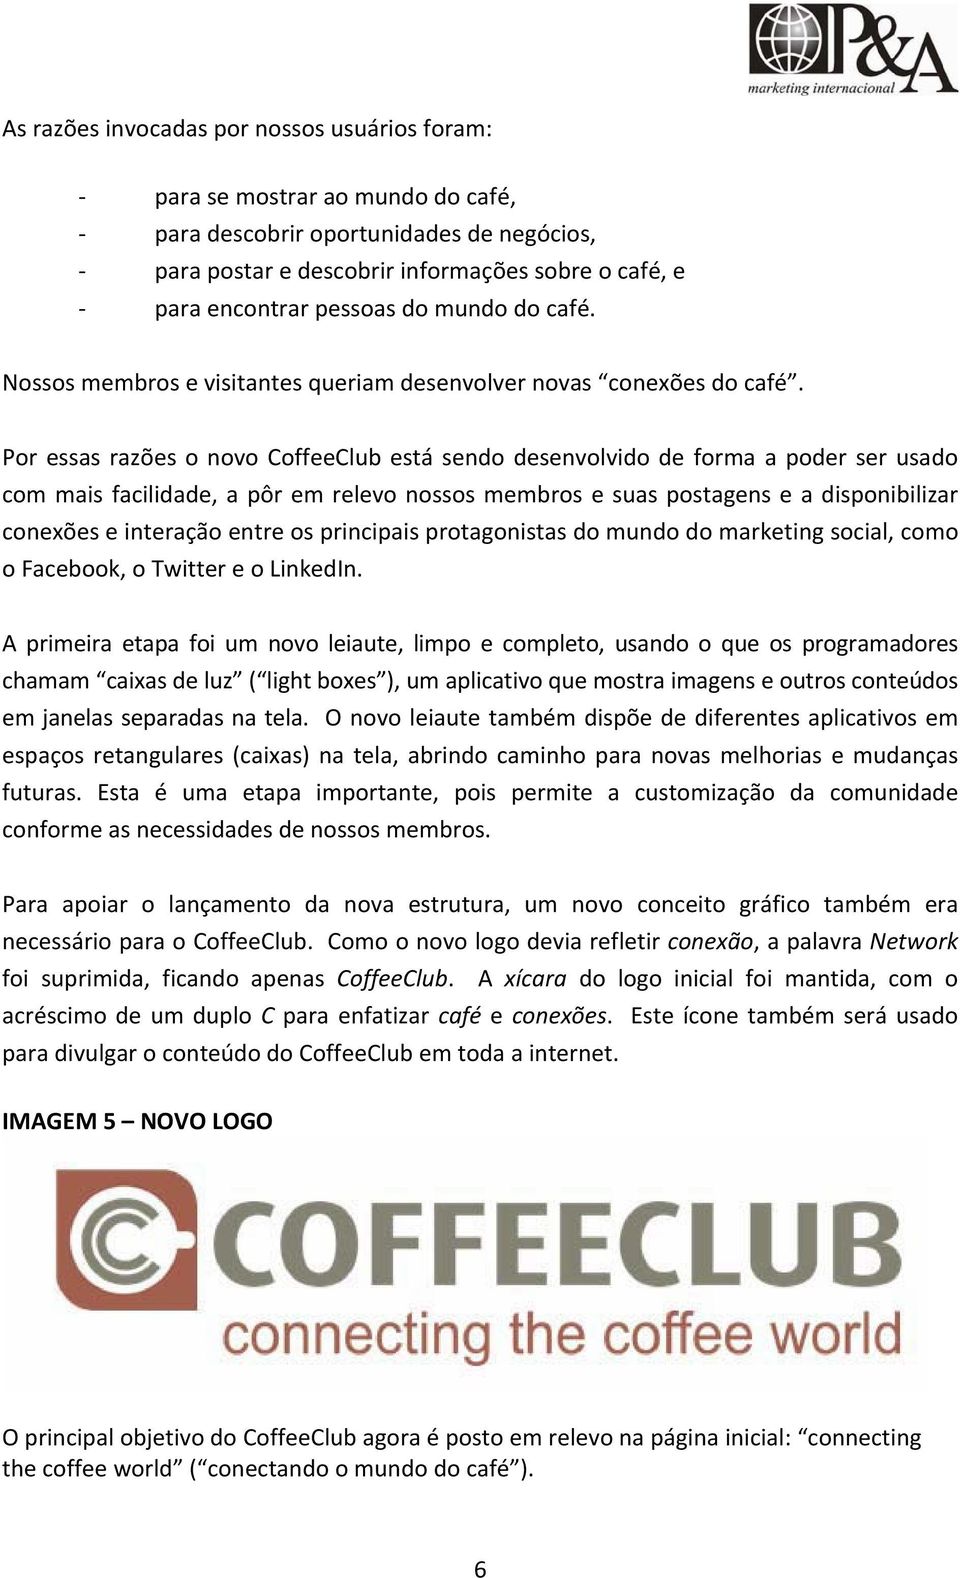 Por essas razões o novo CoffeeClub está sendo desenvolvido de forma a poder ser usado com mais facilidade, a pôr em relevo nossos membros e suas postagens e a disponibilizar conexões e interação